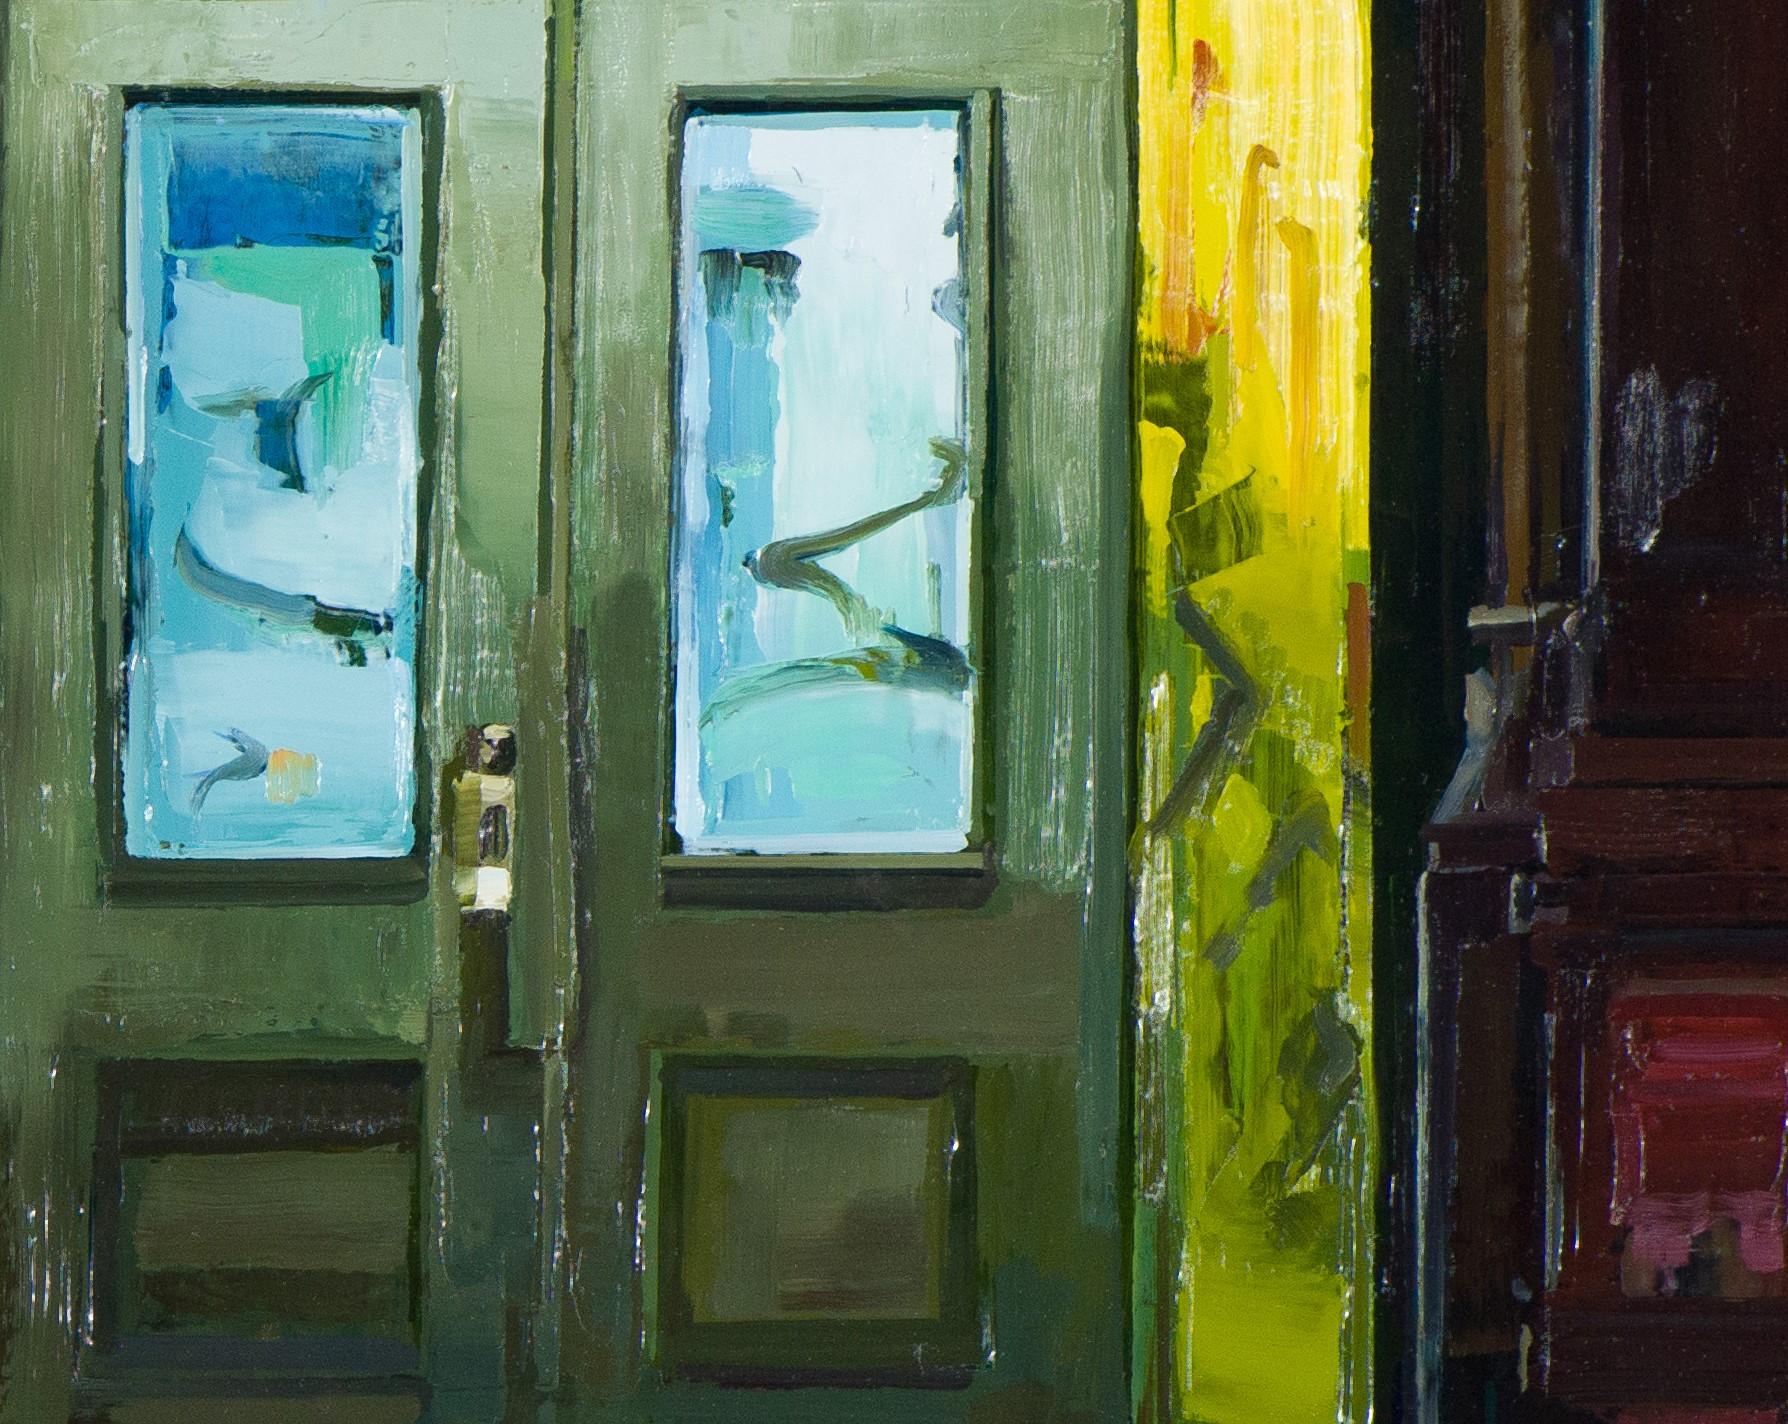 Doorsteps - Painting by Jake Fischer